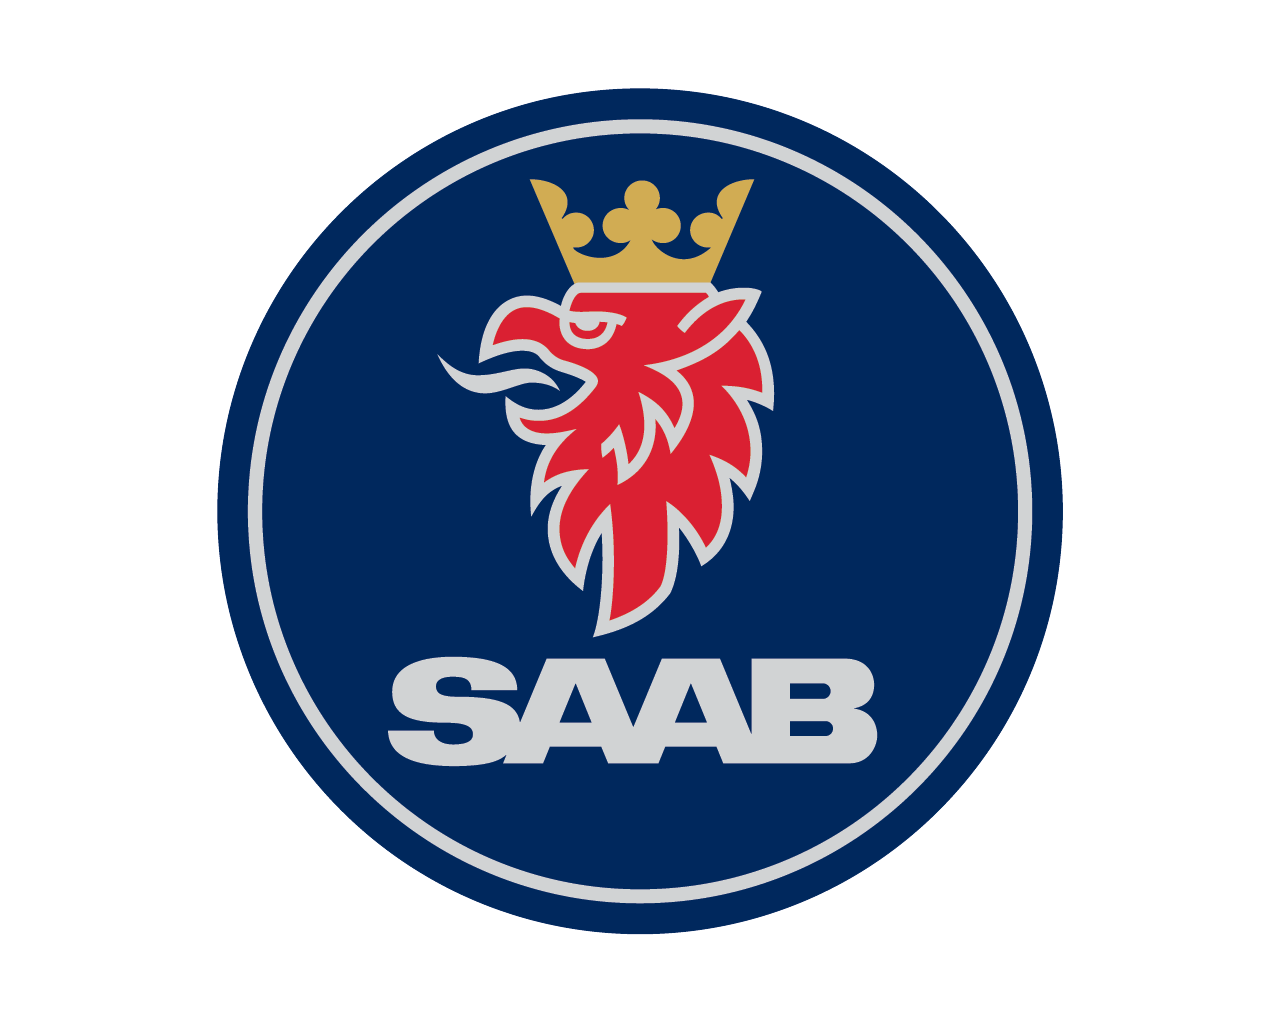 Saab-logo-2000-1280x1024